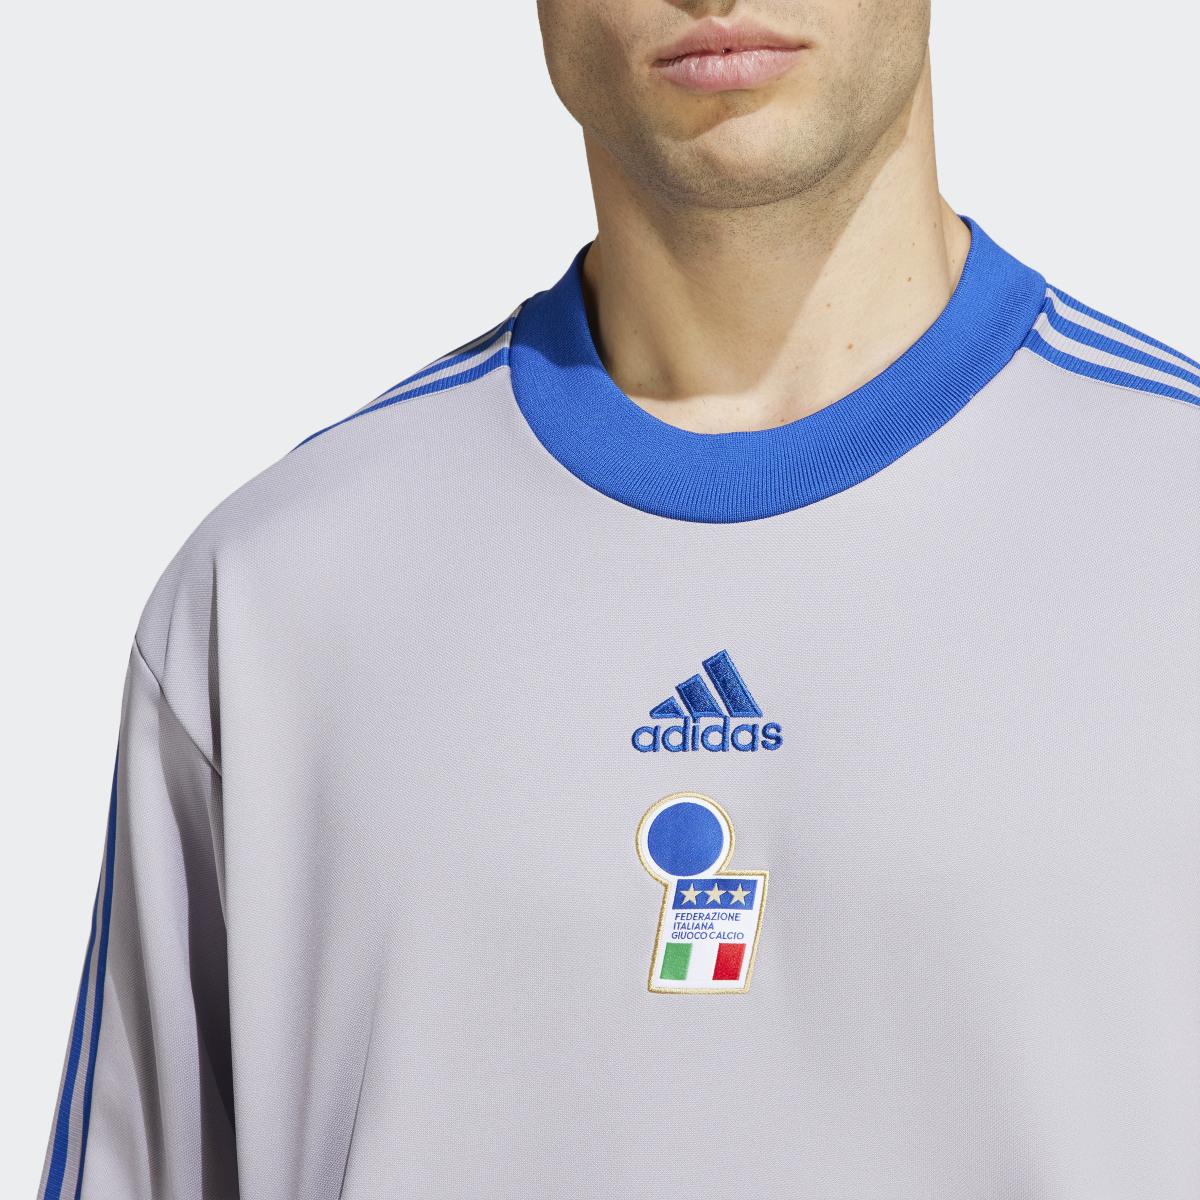 Adidas Italien Icon Torwarttrikot. 8